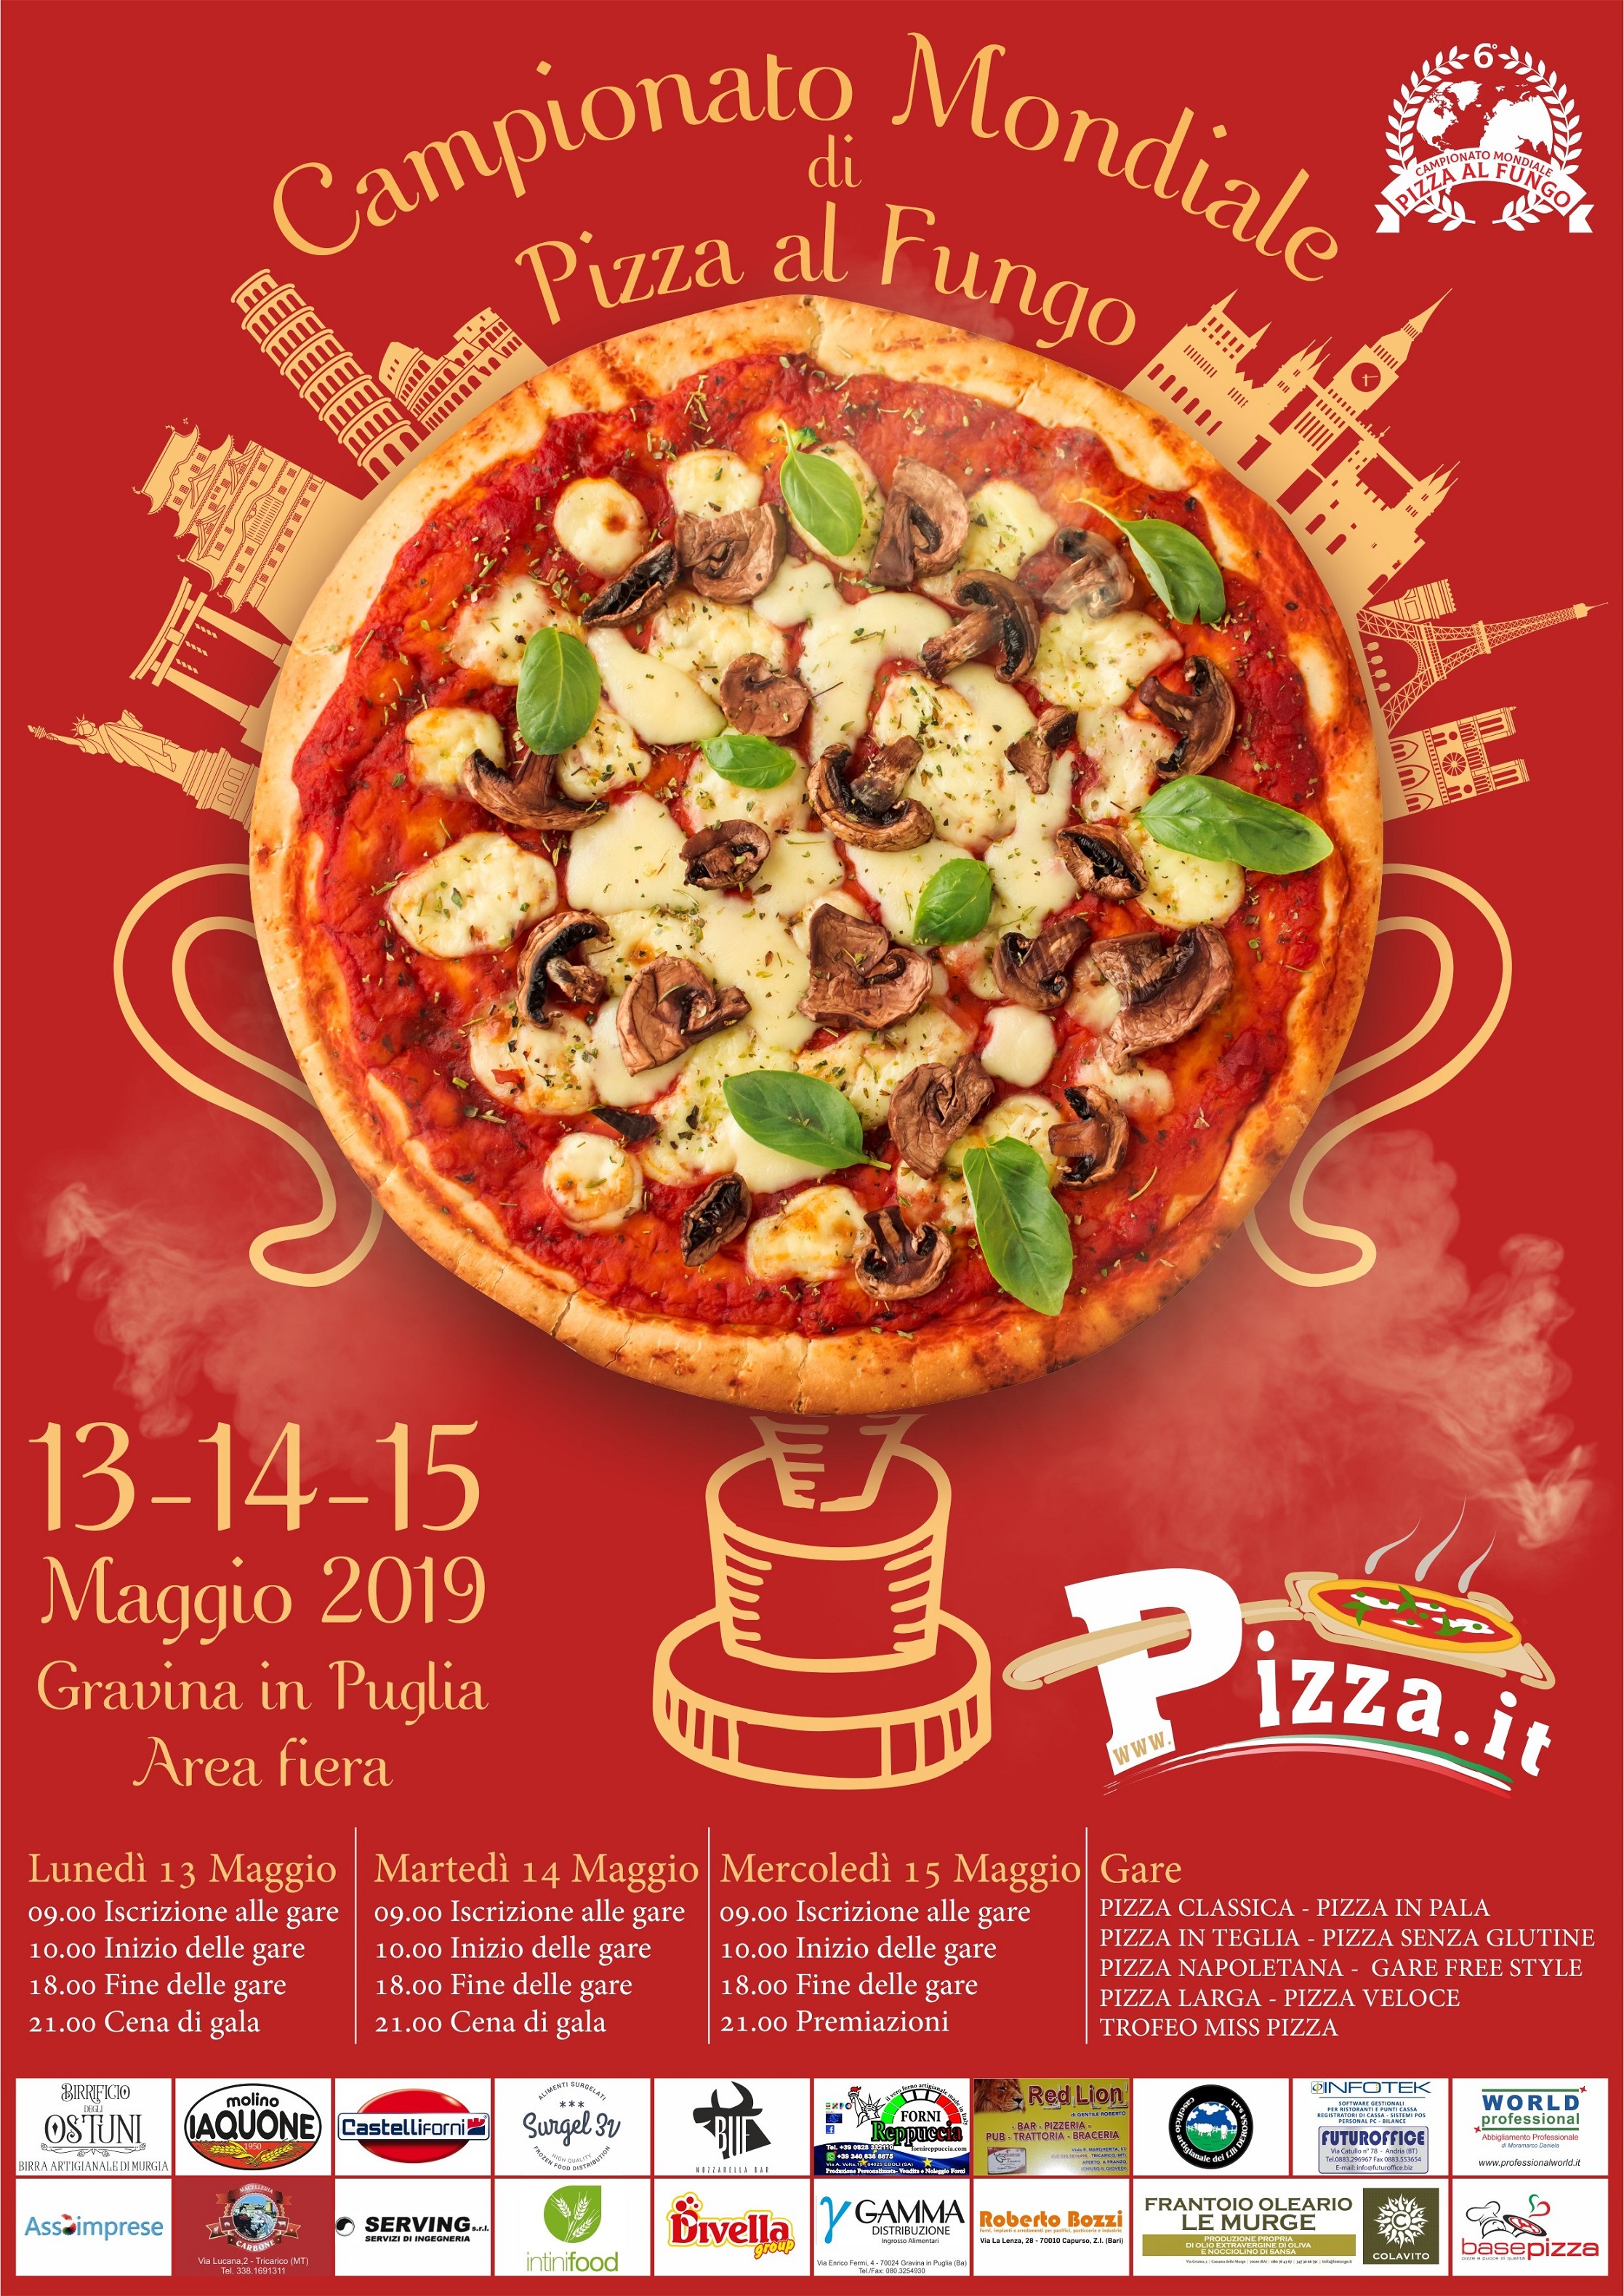 Pizza.it - Campionato mondiale pizza al fungo 2019